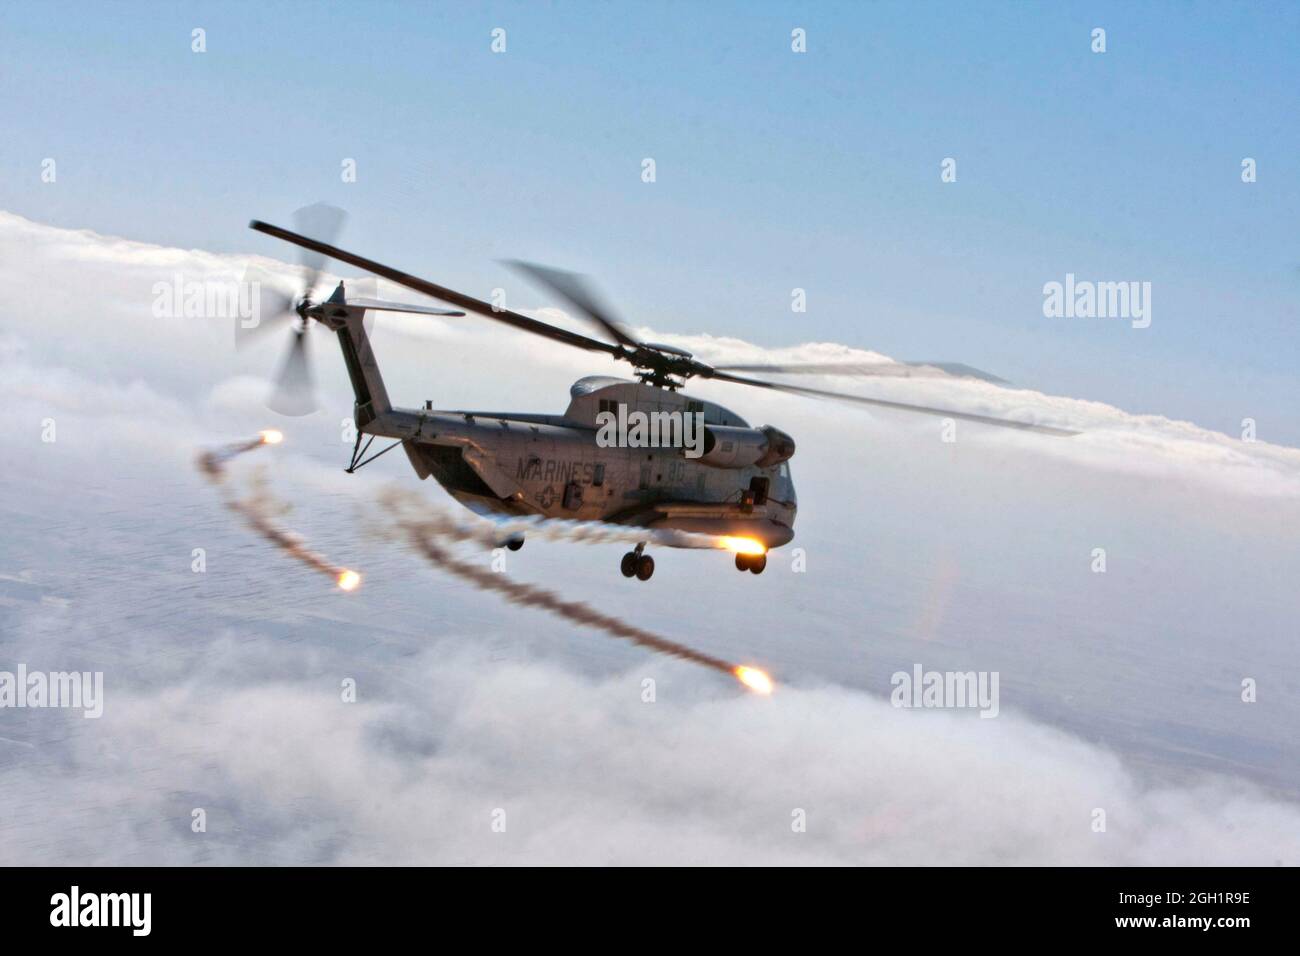 Las bengalas son descargadas de un helicóptero del estallón marino CH-53D del Cuerpo de Infantería de Marina Heavy Helicopter Squadron 363 (HMH-363) durante una operación de vuelo de rutina, Helmand River Valley, Helmand Province, Afganistán, 5 de enero, 2012. Los pilotos marinos de HMH-363 utilizan bengalas que garantizan la seguridad de la tripulación a bordo y protegen la aeronave mientras se encuentra en vuelo durante condiciones meteorológicas de escasa visibilidad. Foto de stock